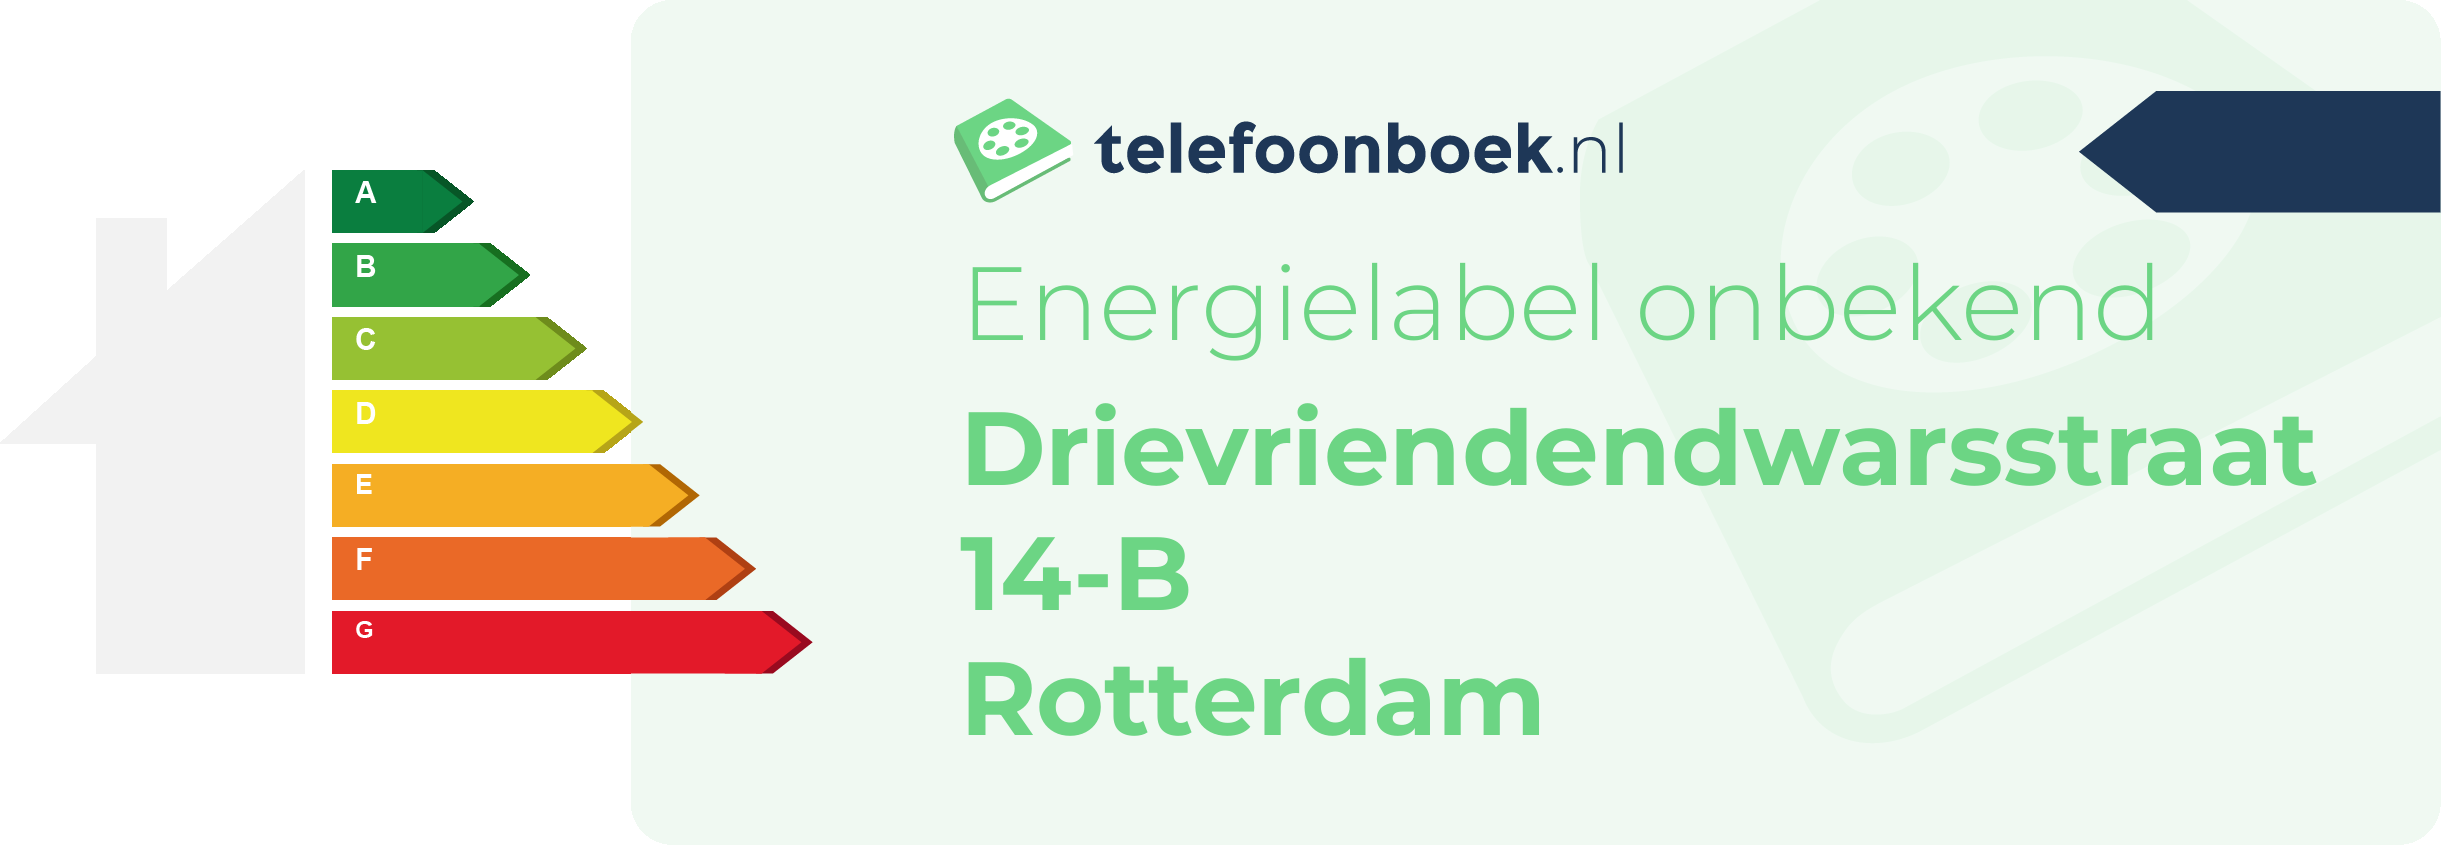 Energielabel Drievriendendwarsstraat 14-B Rotterdam